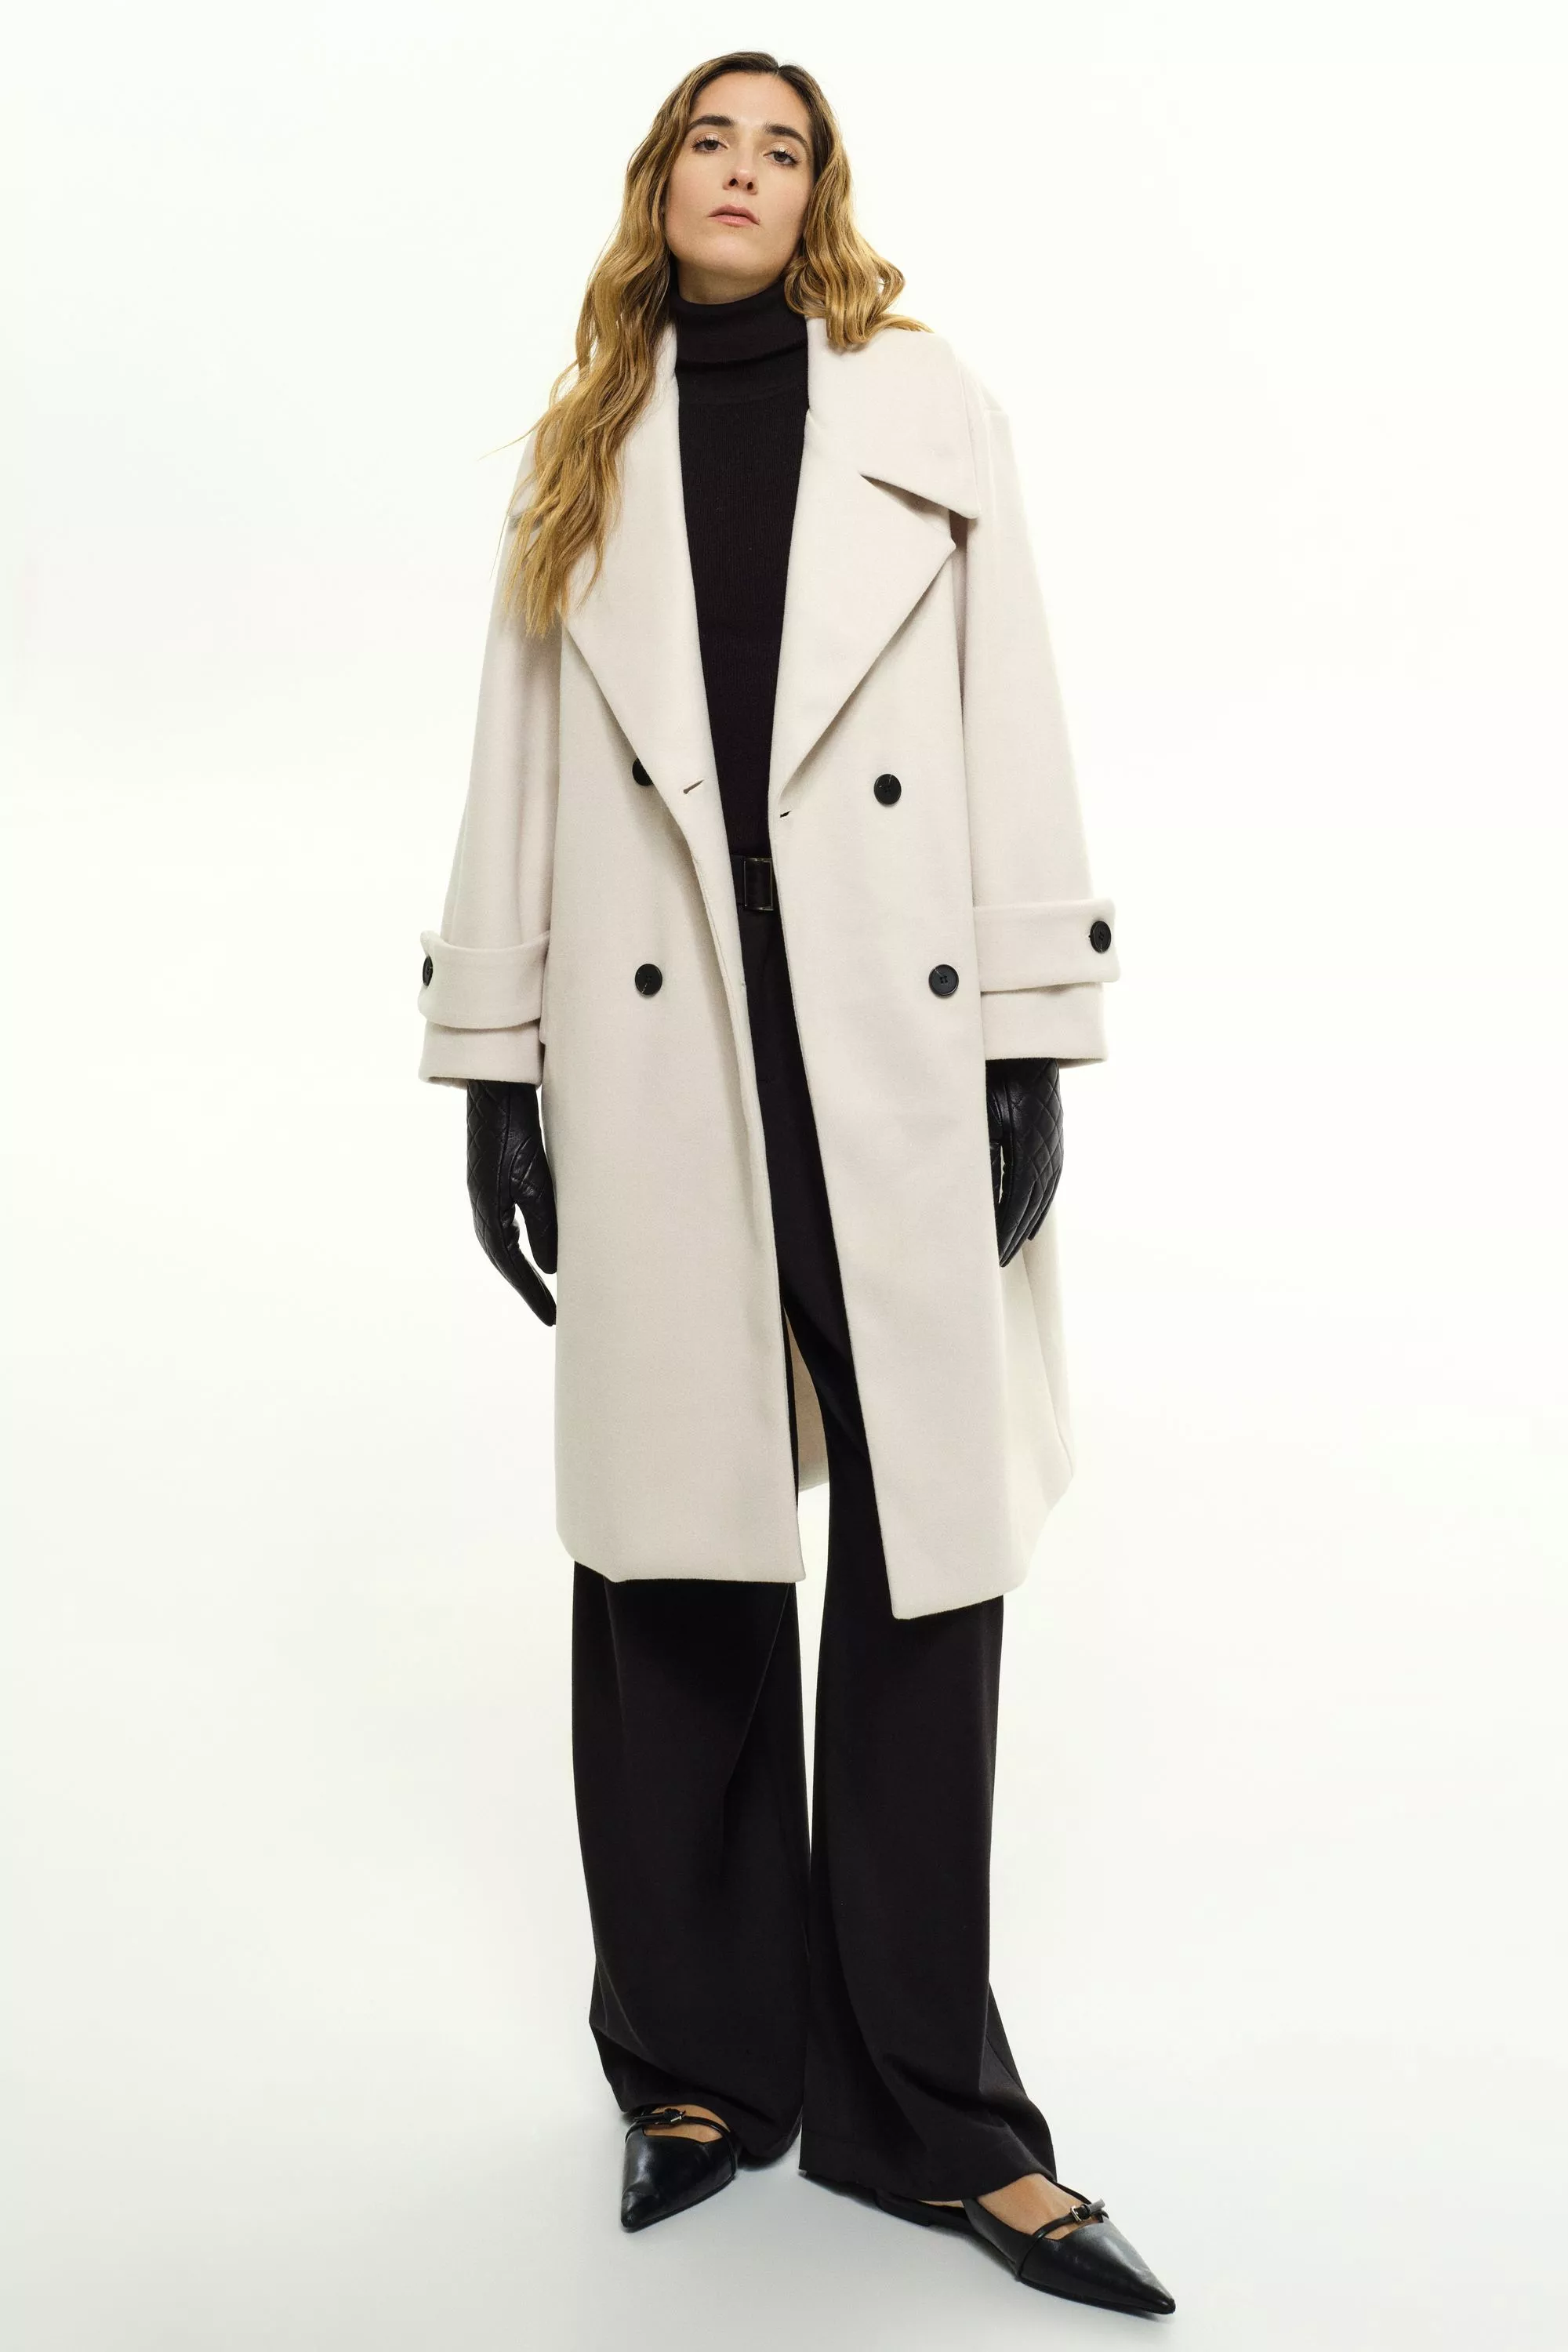 Damen Zweireihiger Mantel in Weiß von Ricano, Frontansicht am Model